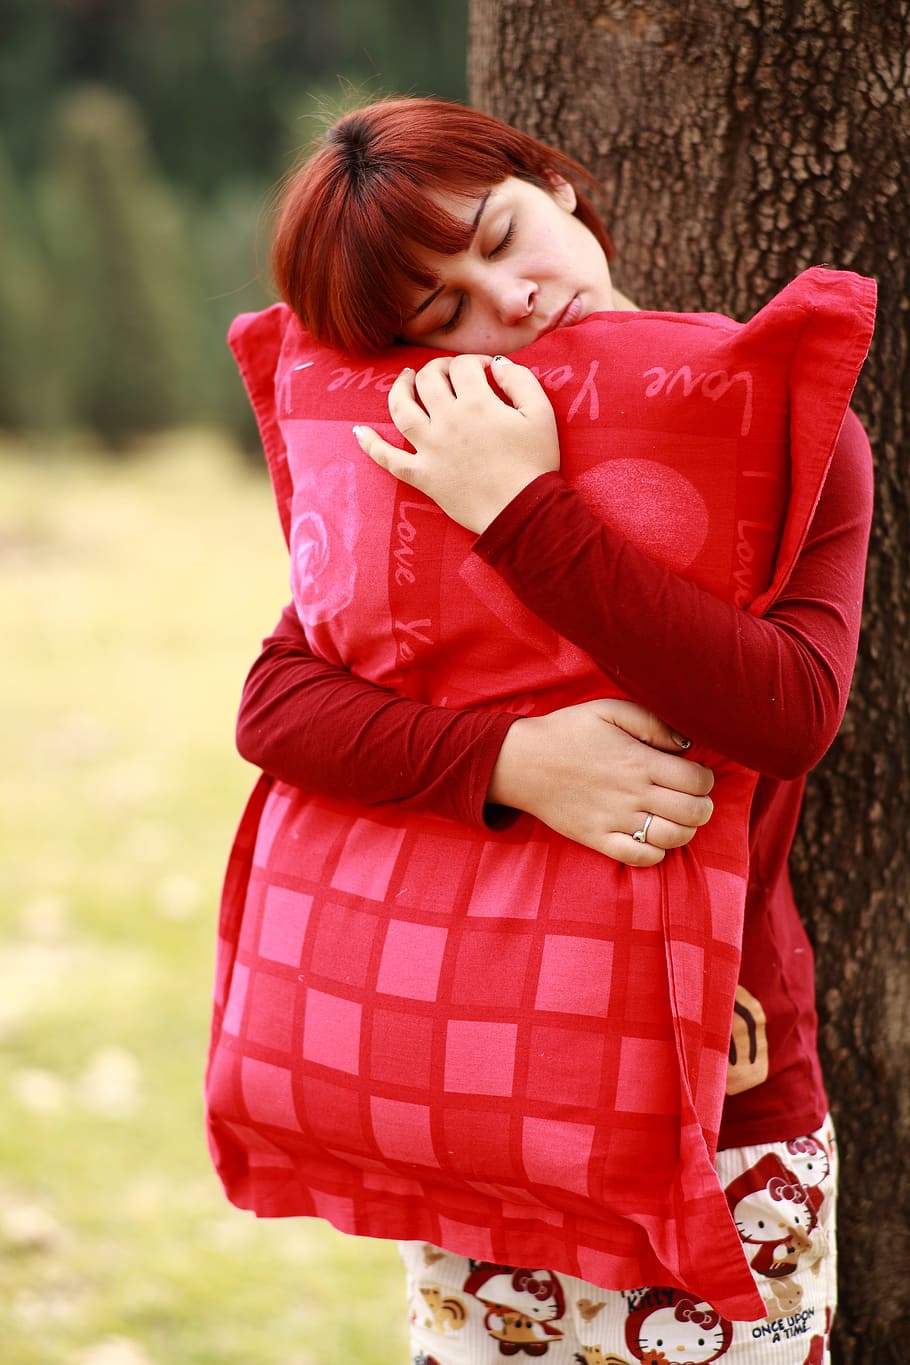 Mujer, abrazos, rojo, almohada, al lado, árbol, durante el día, dormir, sonambulismo, retrato